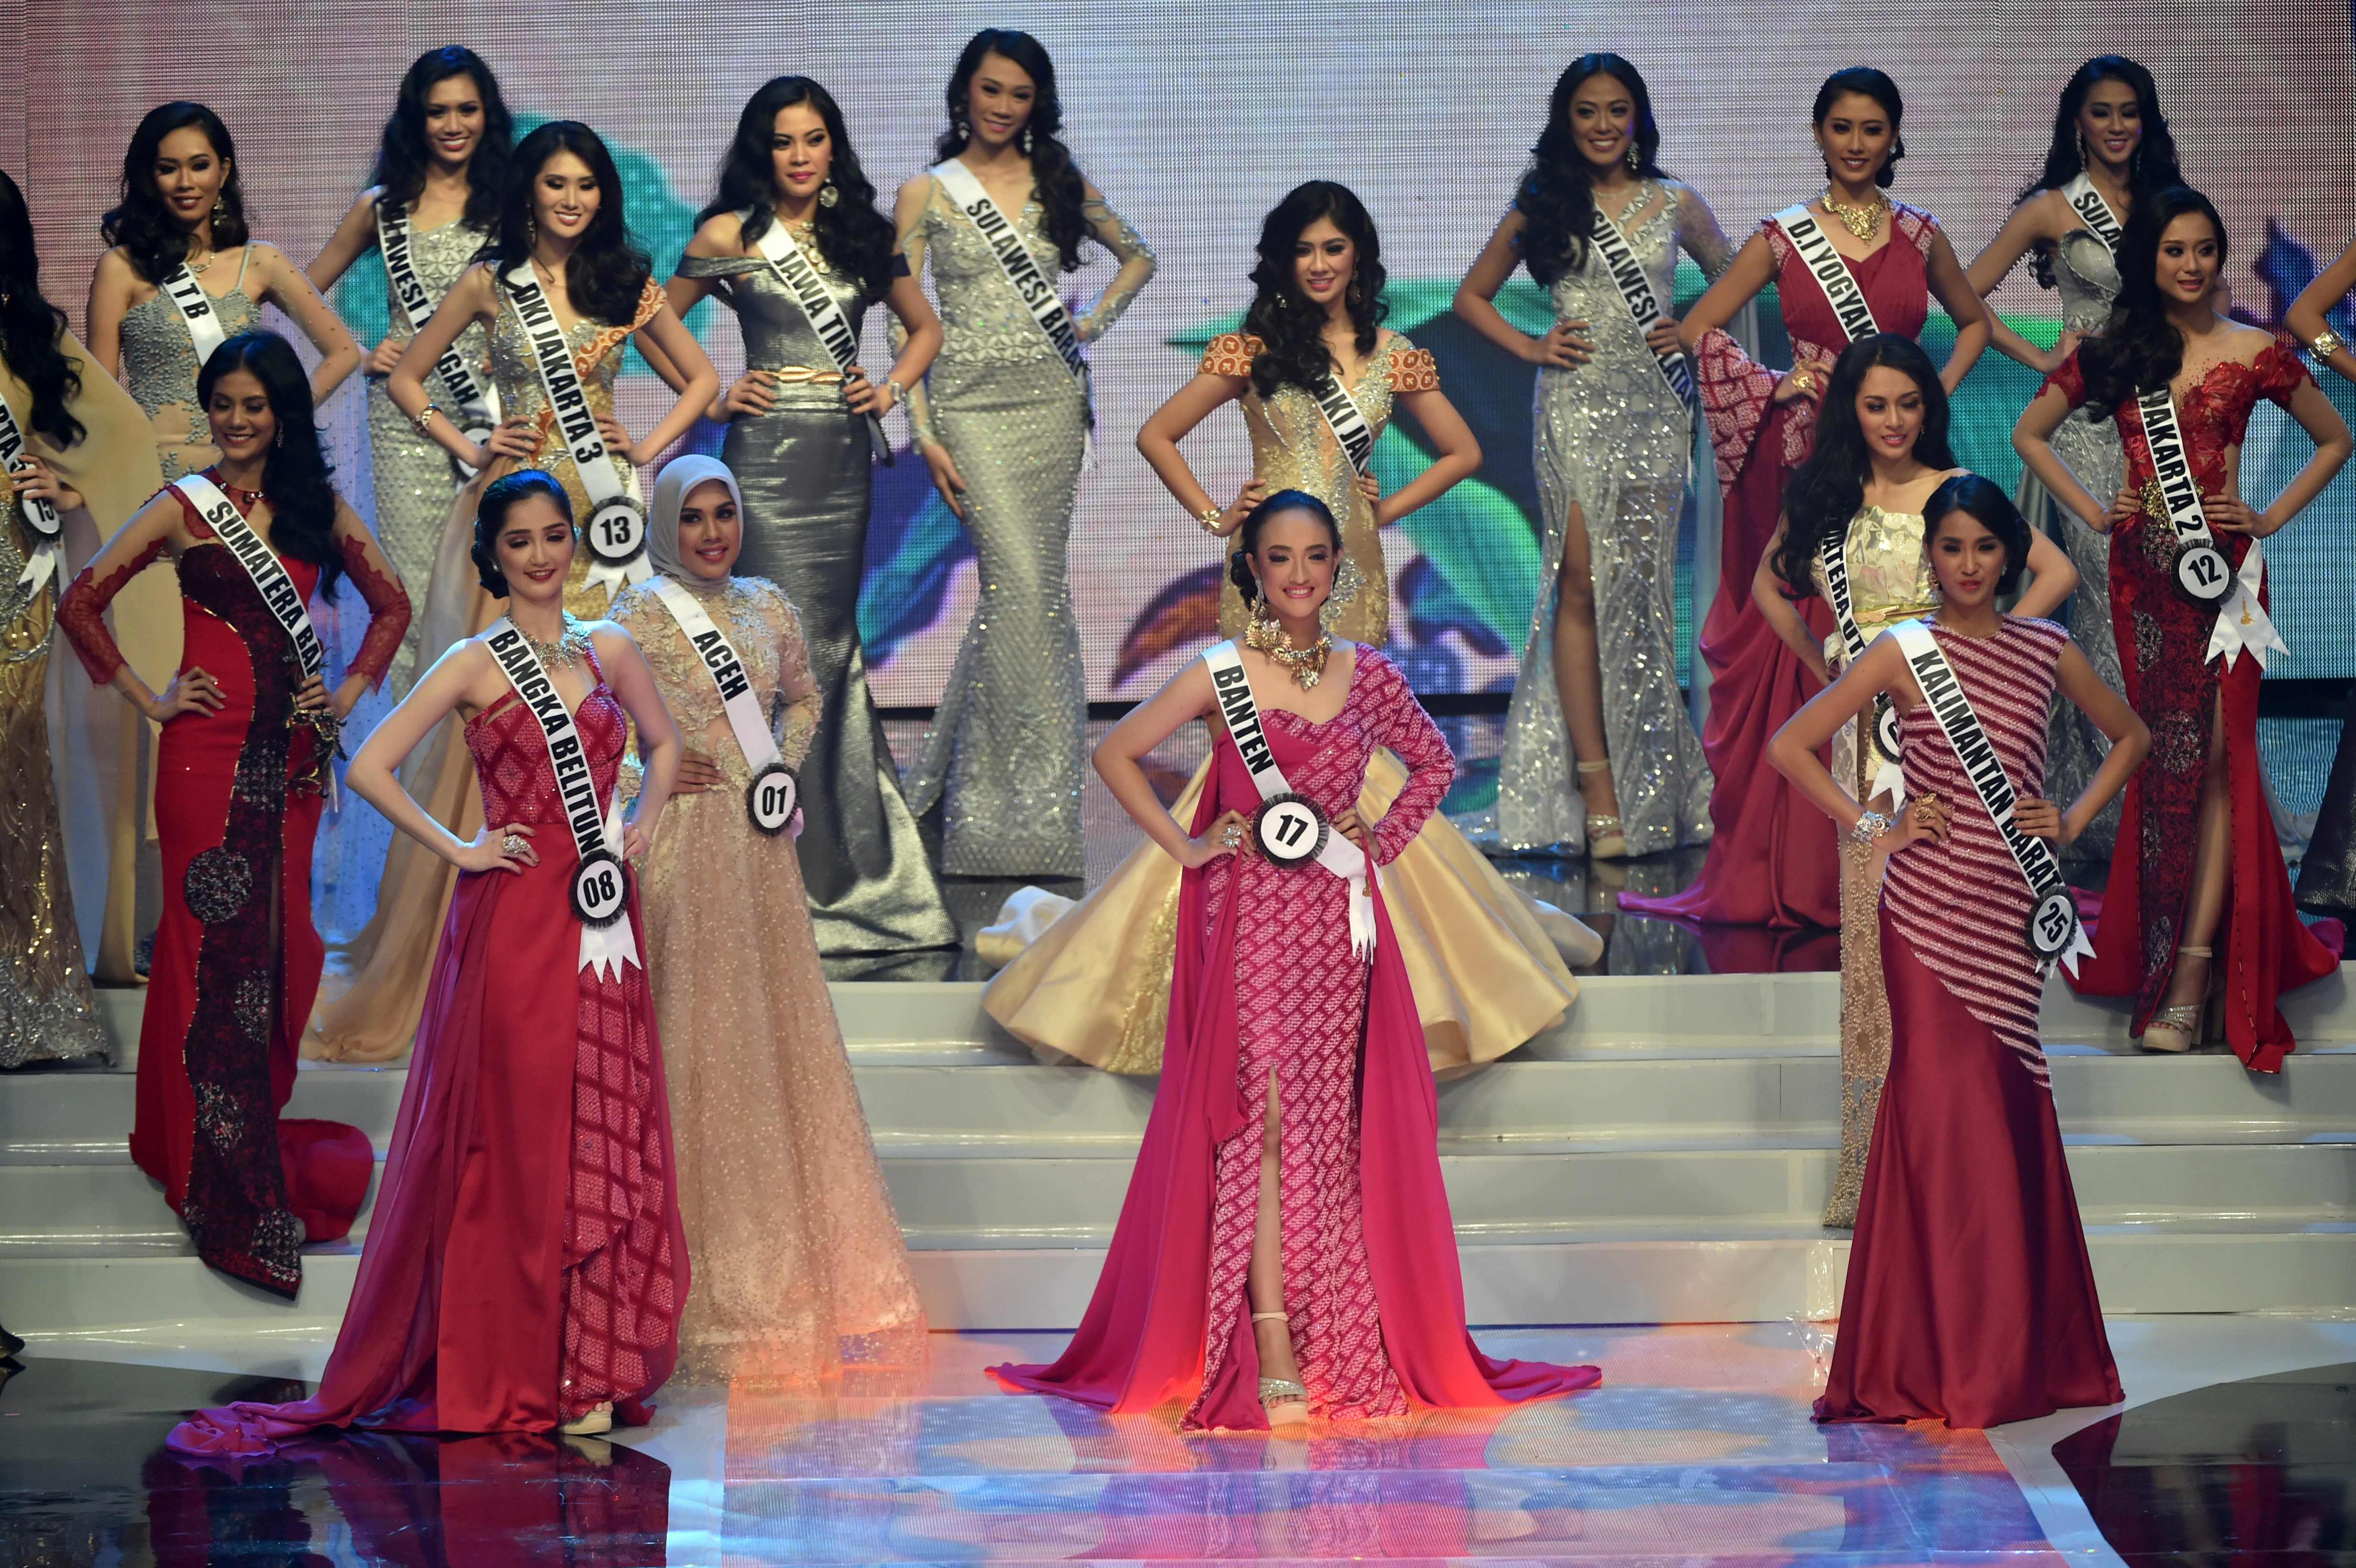 المشاركات فى نهائيات مسابقة ملكة جمال أندونيسيا 2018